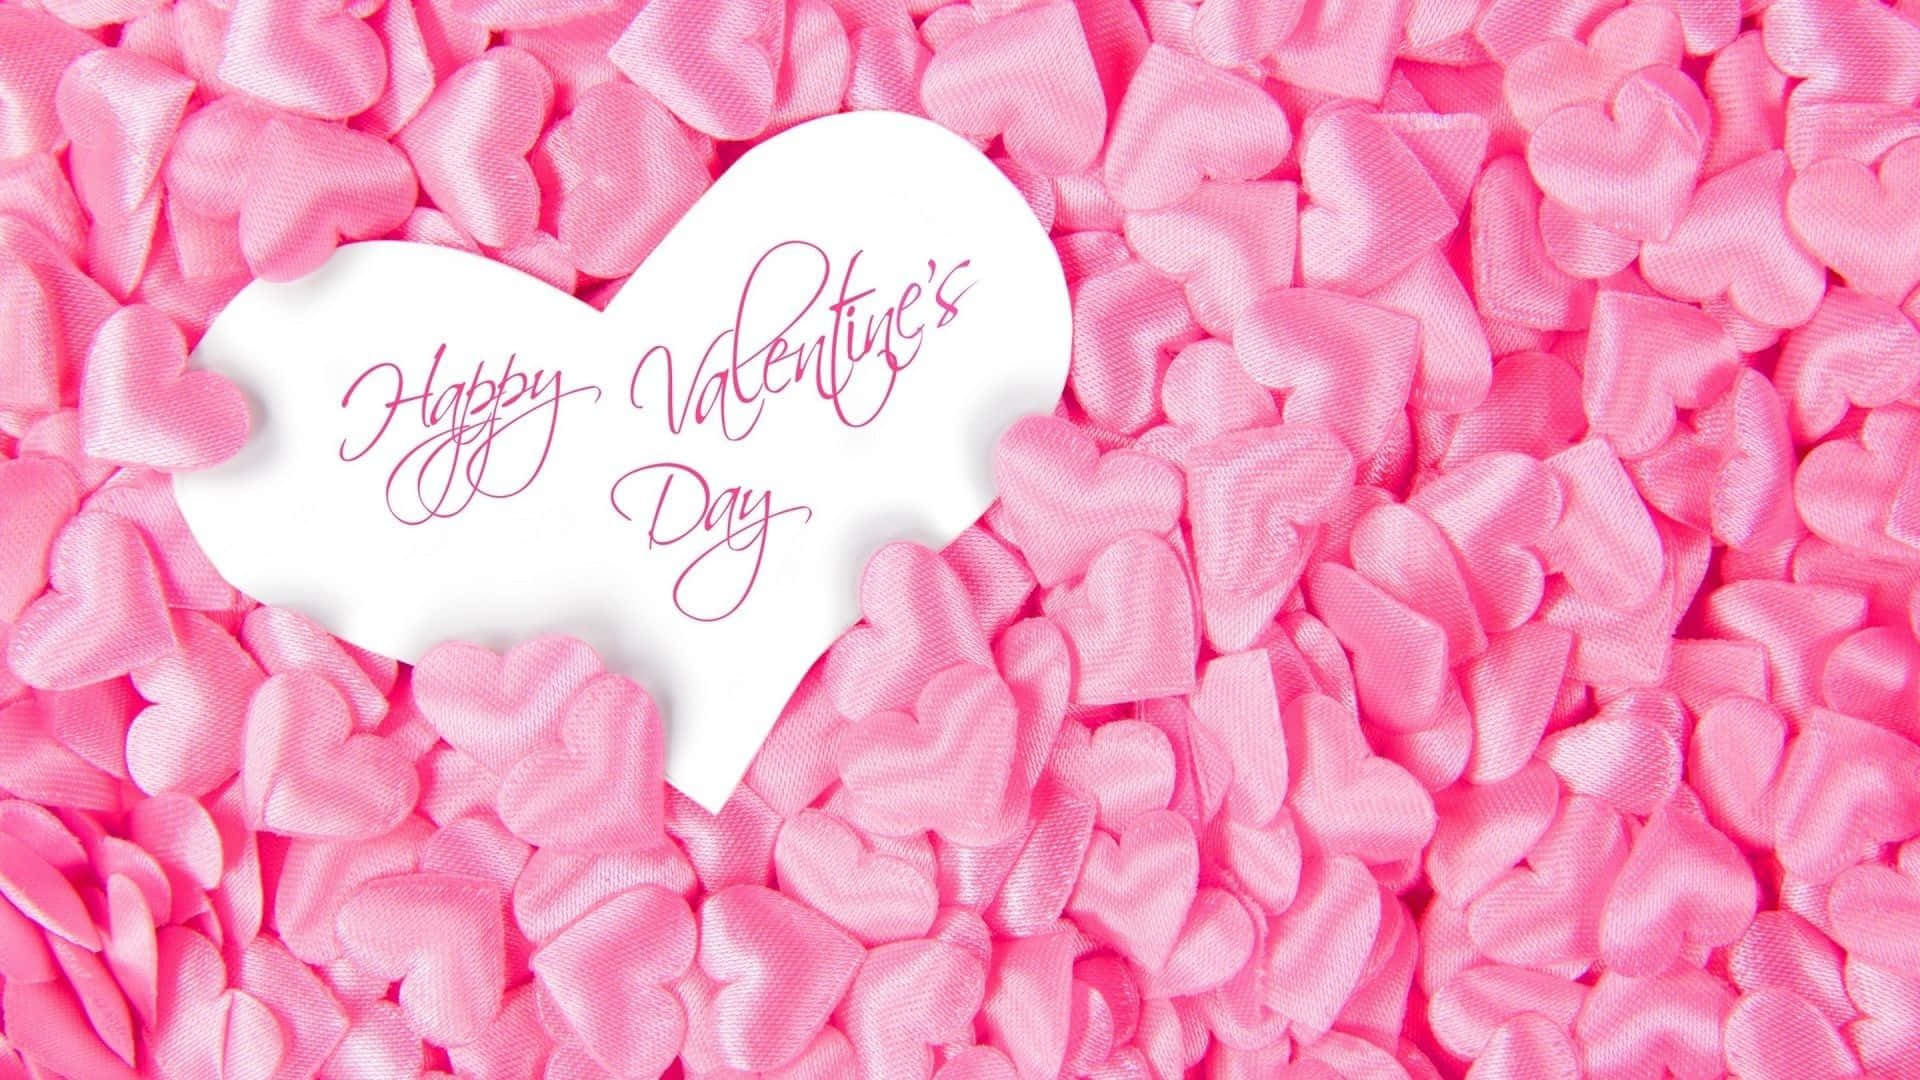 Cartãode Dia Dos Namorados Rosa Com Coração Branco Para Wallpaper De Computador Ou Celular. Papel de Parede